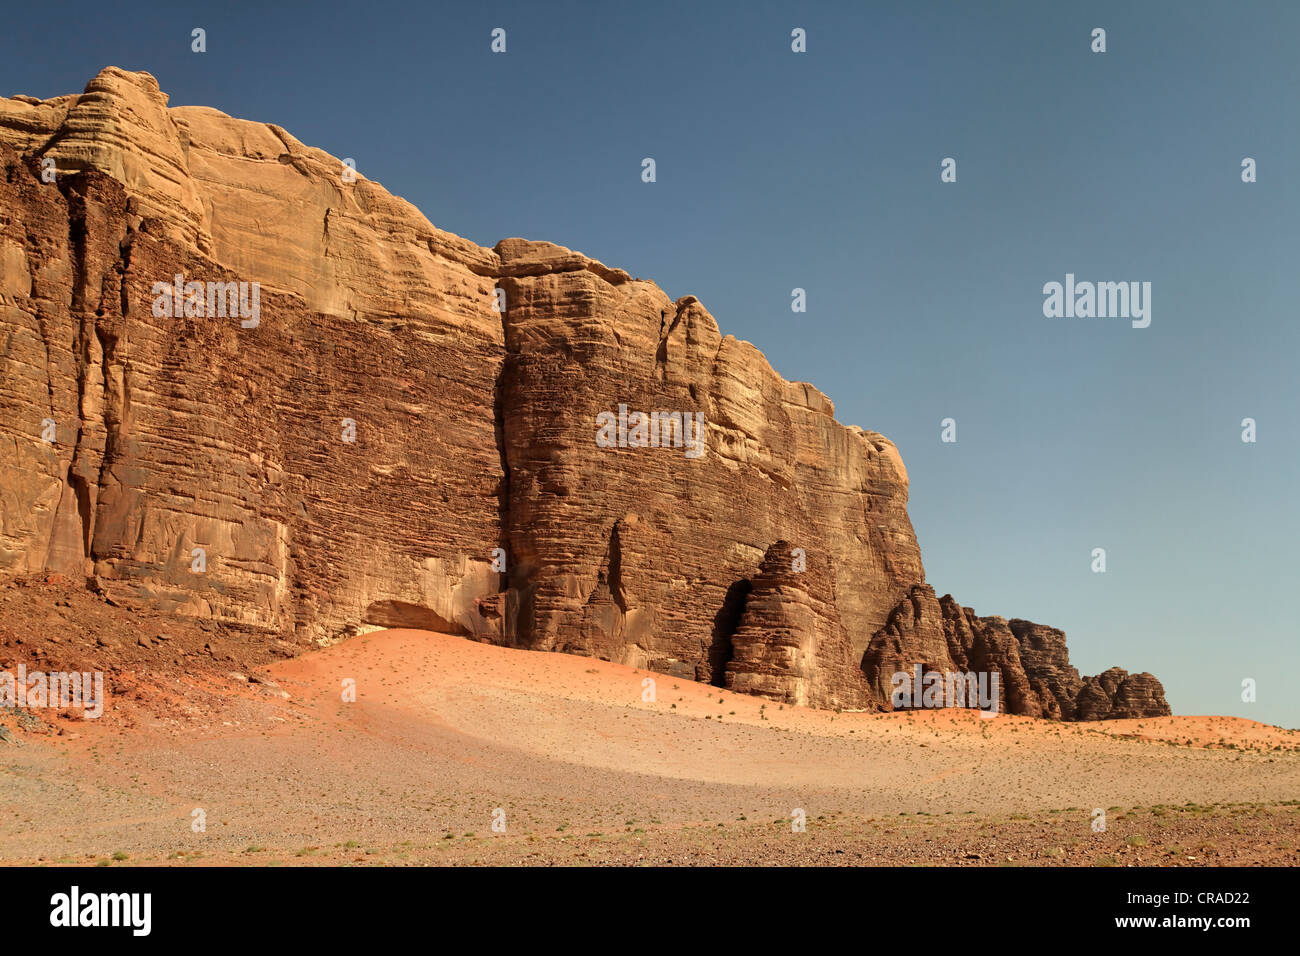 Plaine désertique avec une augmentation du massif de montagne, Wadi Rum, Royaume hachémite de Jordanie, Moyen-Orient, Asie Banque D'Images